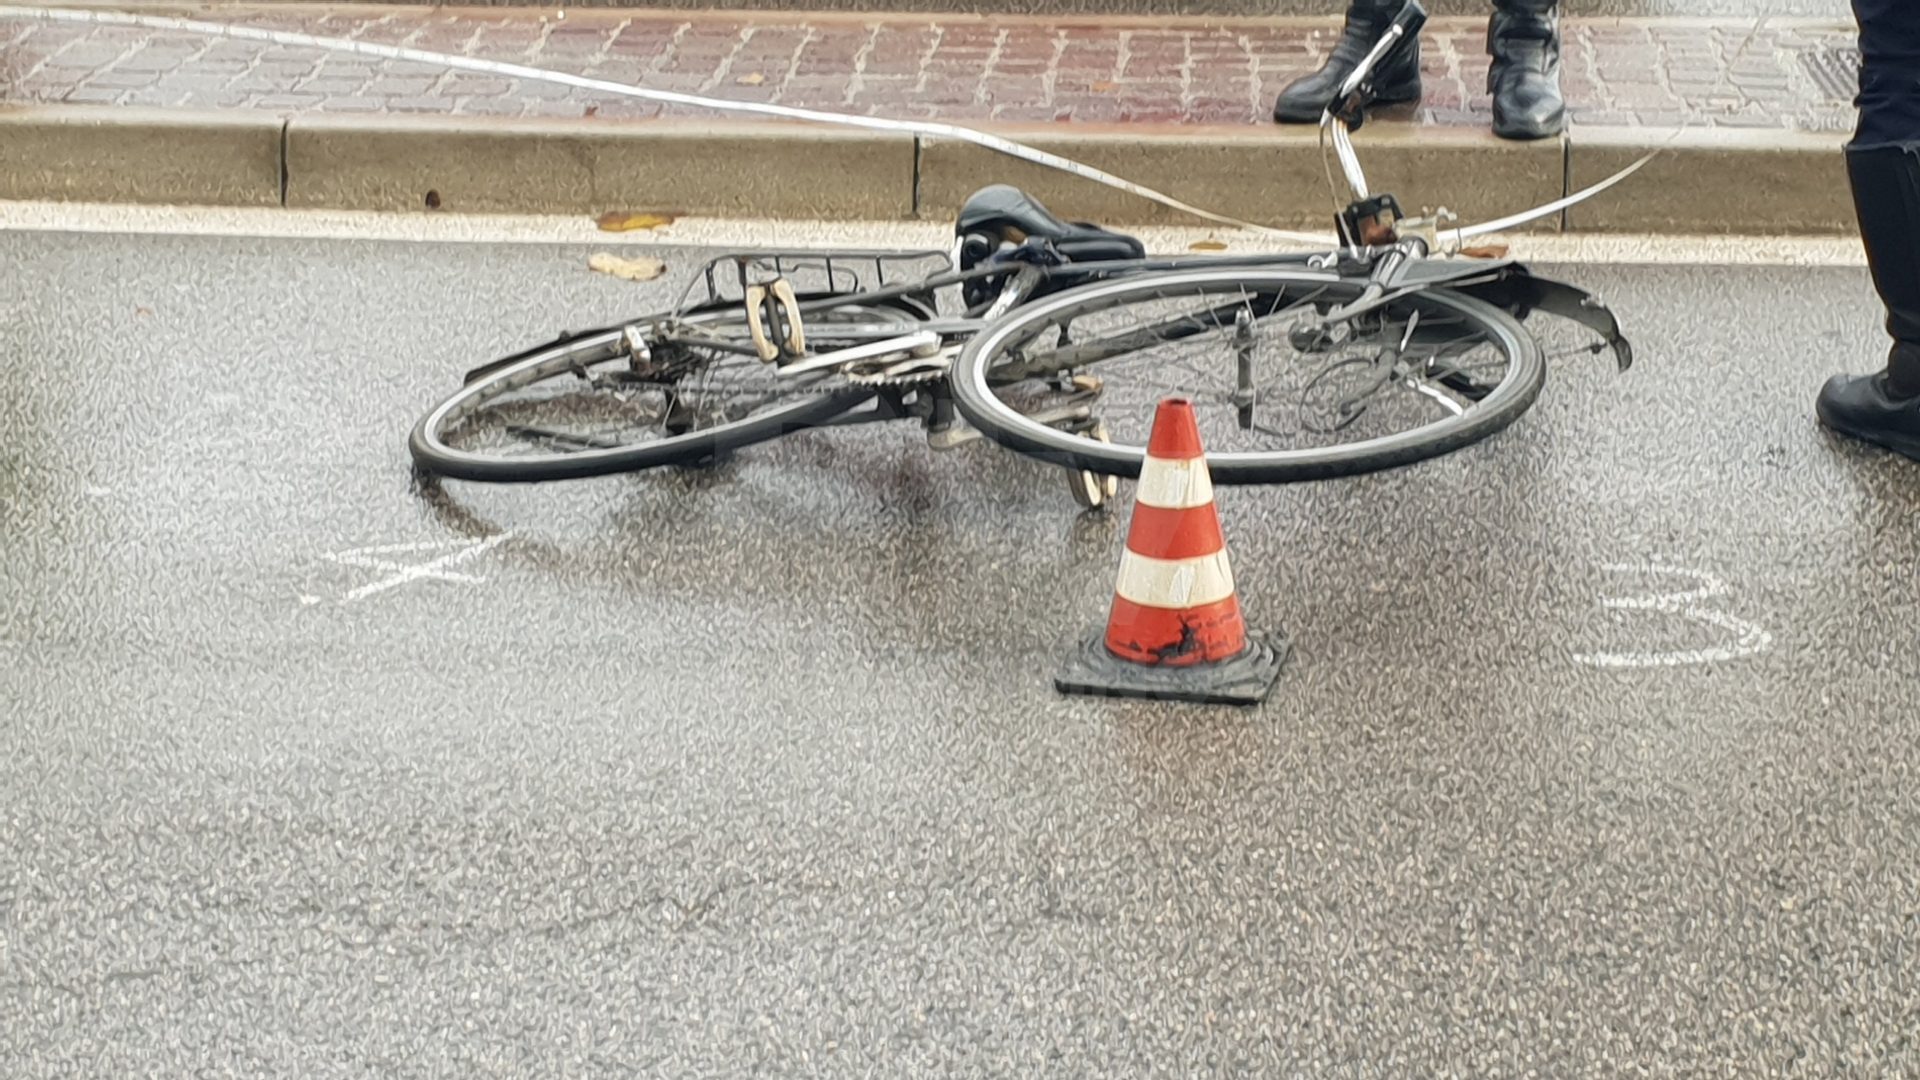 Ragazzo in bici investito lungo la strada statale 18: è grave